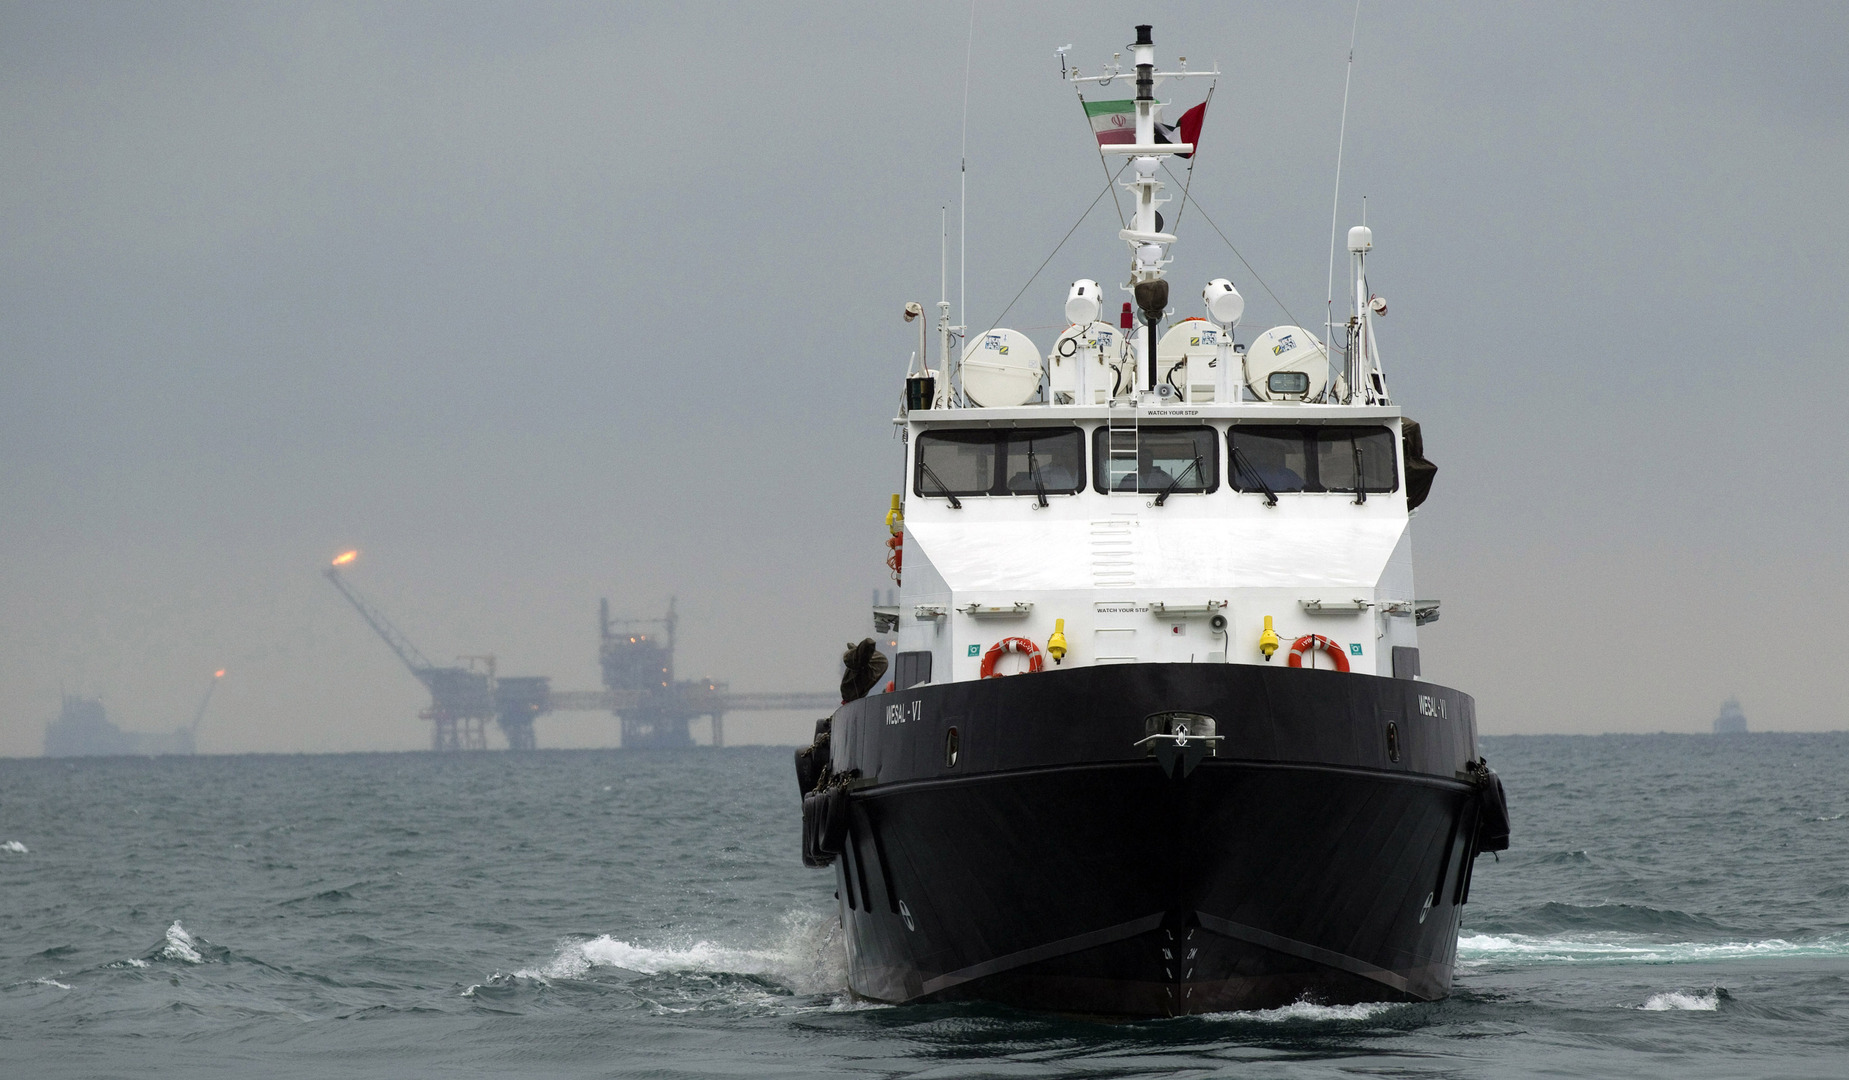 نيويورك تايمز: إسرائيل أبلغت الولايات المتحدة باستهدافها السفينة الإيرانية 